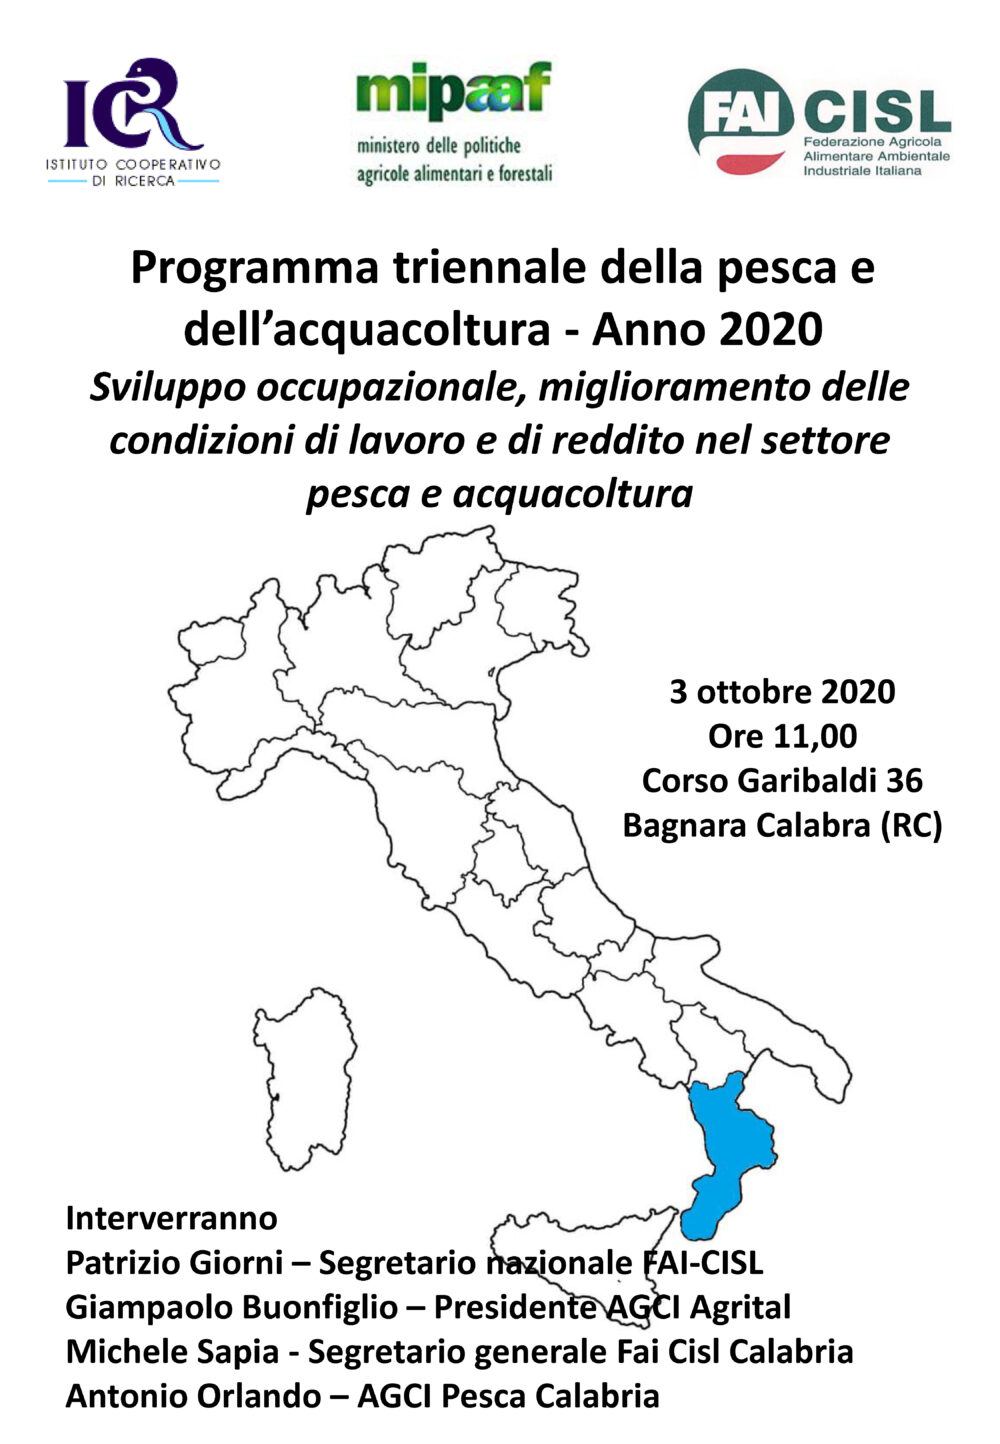 Programma triennale della pesca e dell’acquacoltura (2020) 03/10/2020